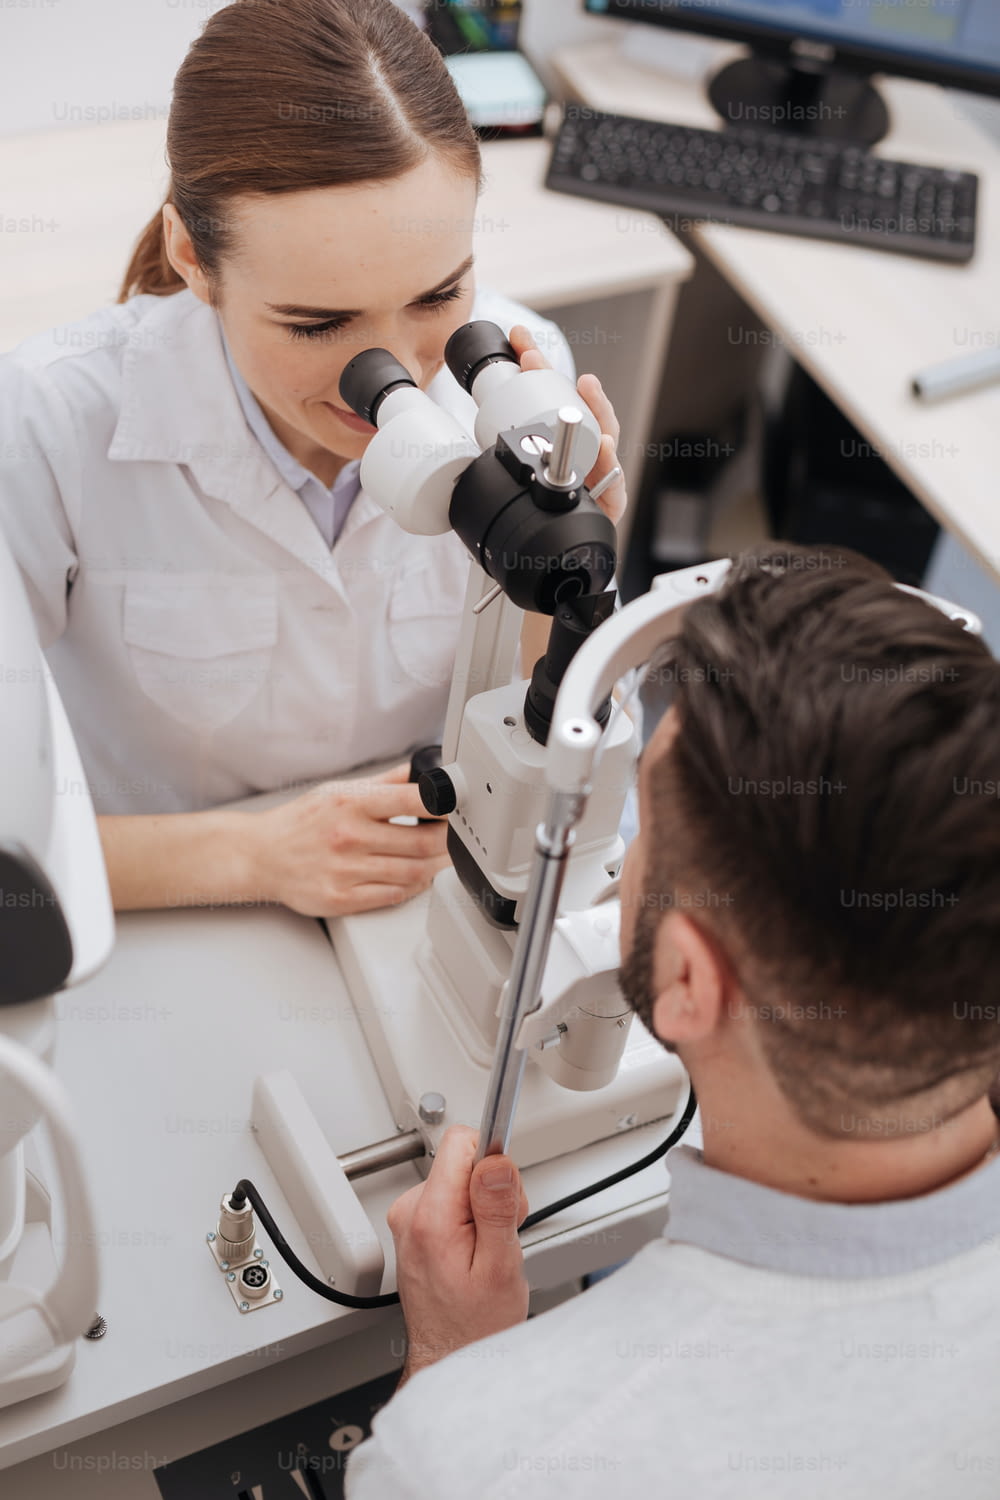 Ophthalmologische Untersuchung. Draufsicht einer netten professionellen Optikerin, die ihrem Patienten gegenüber sitzt und seine Augen untersucht, während er medizinische Geräte benutzt